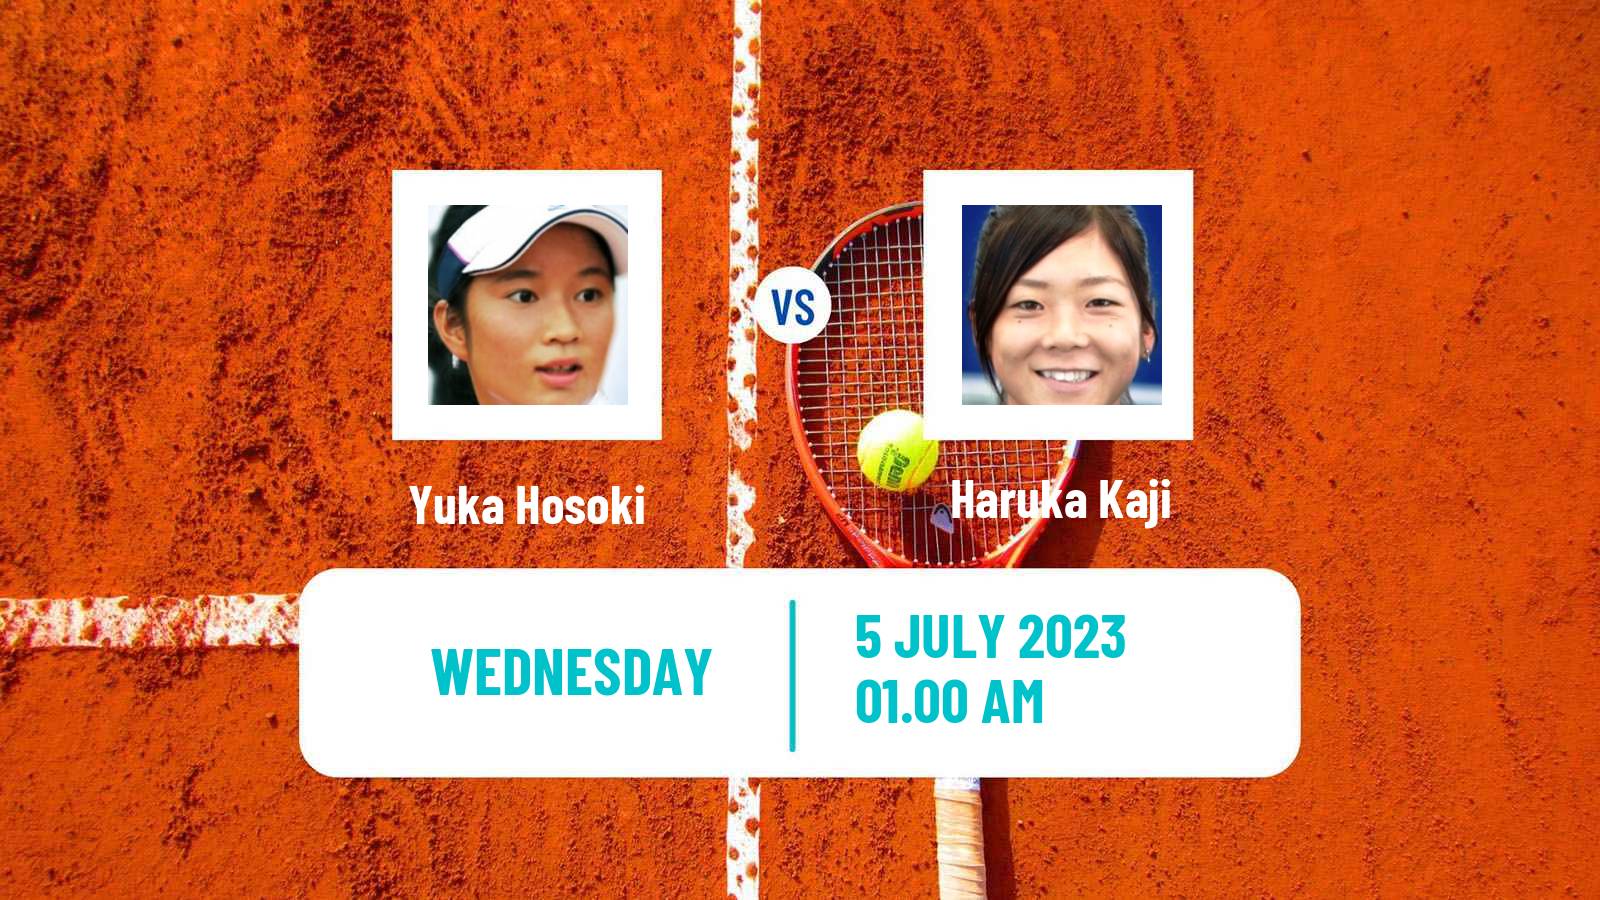 Tennis ITF W40 Hong Kong Women Yuka Hosoki - Haruka Kaji